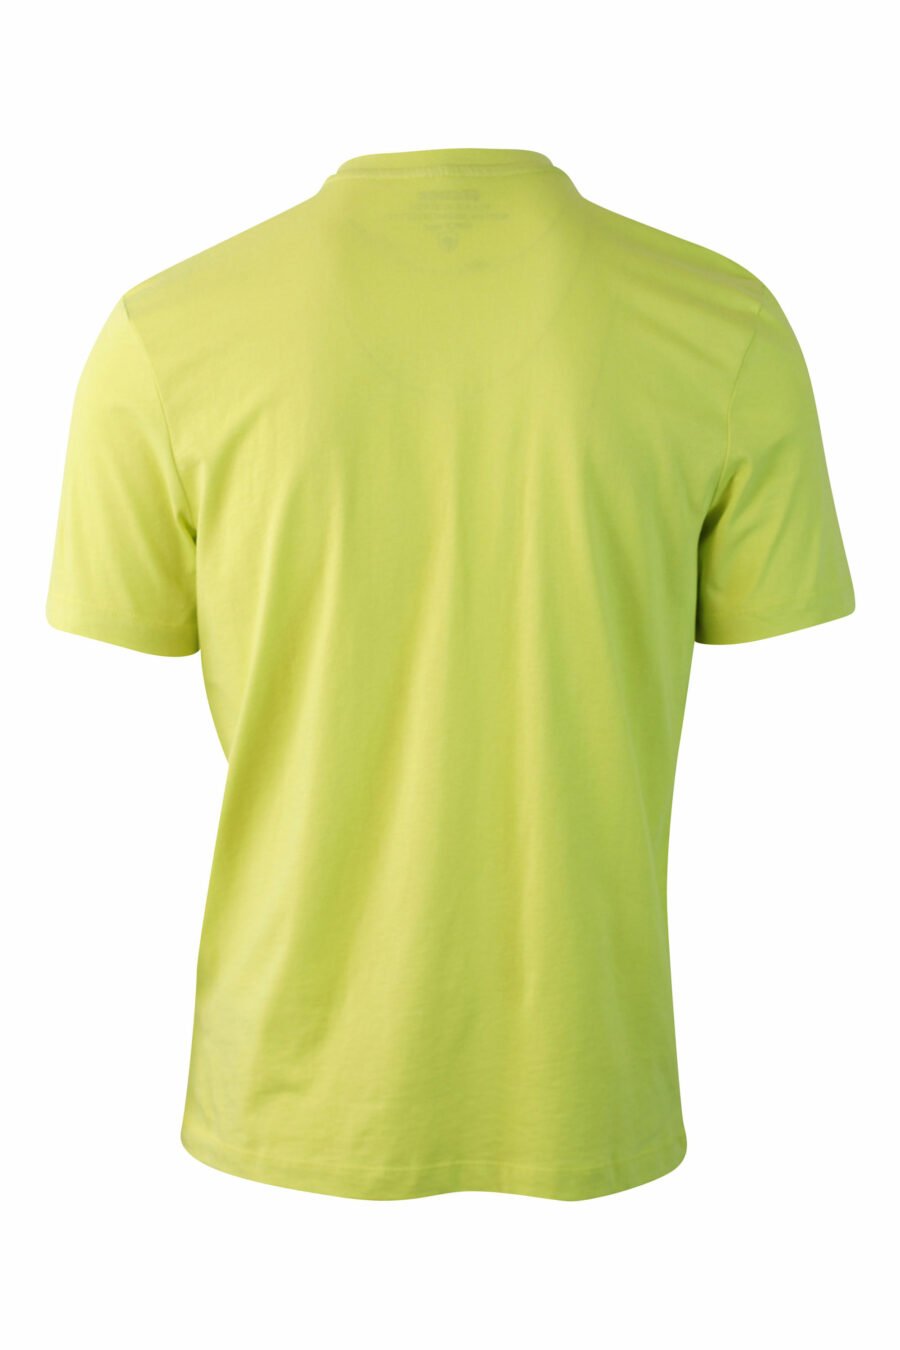 T-shirt verde-limão com maxilogo monocromático - IMG 0074 1